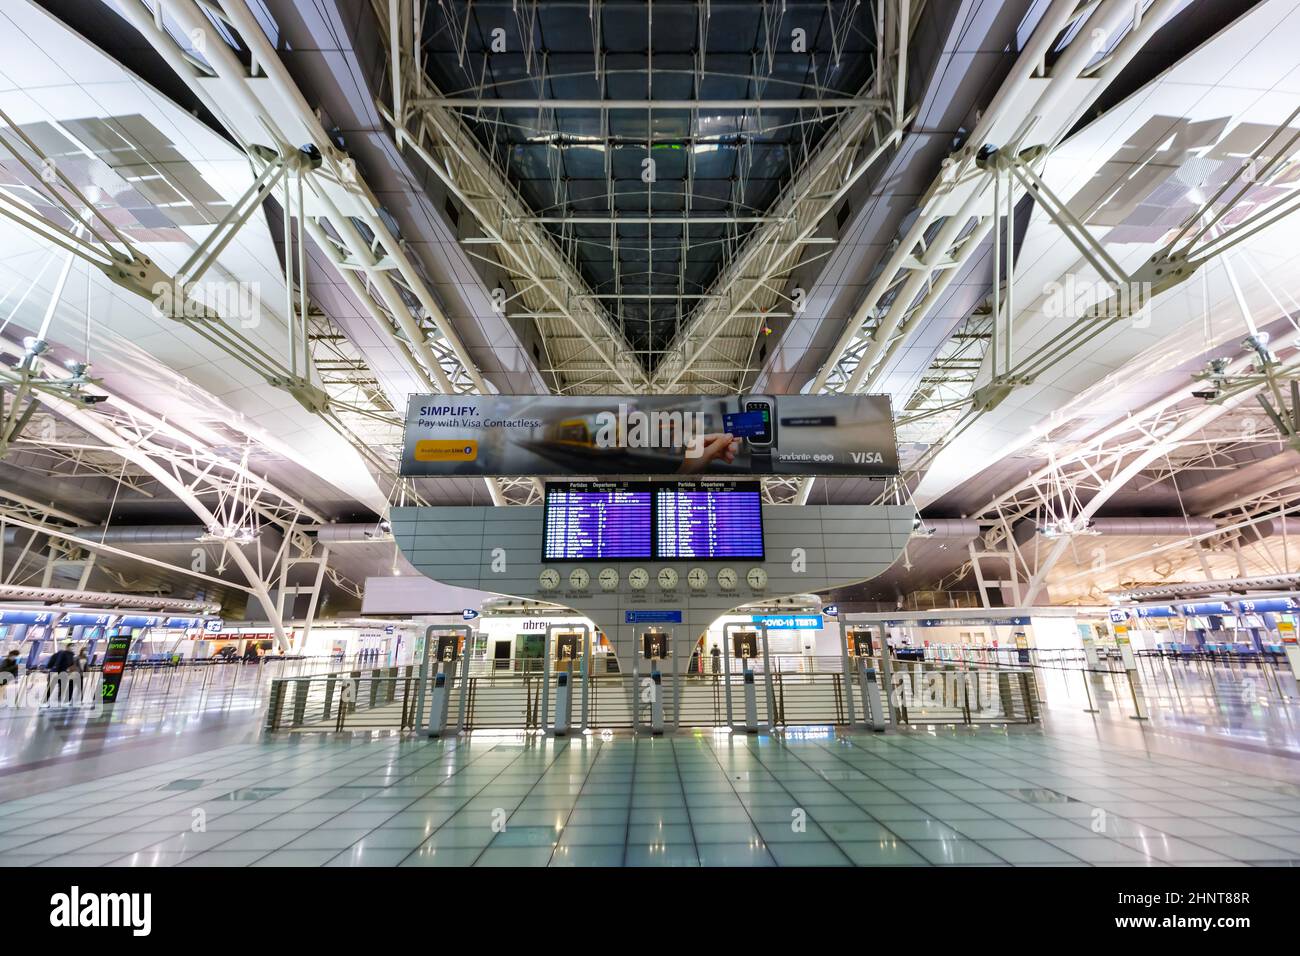 Porto OPO Airport Terminal in Portugal Stock Photo - Alamy